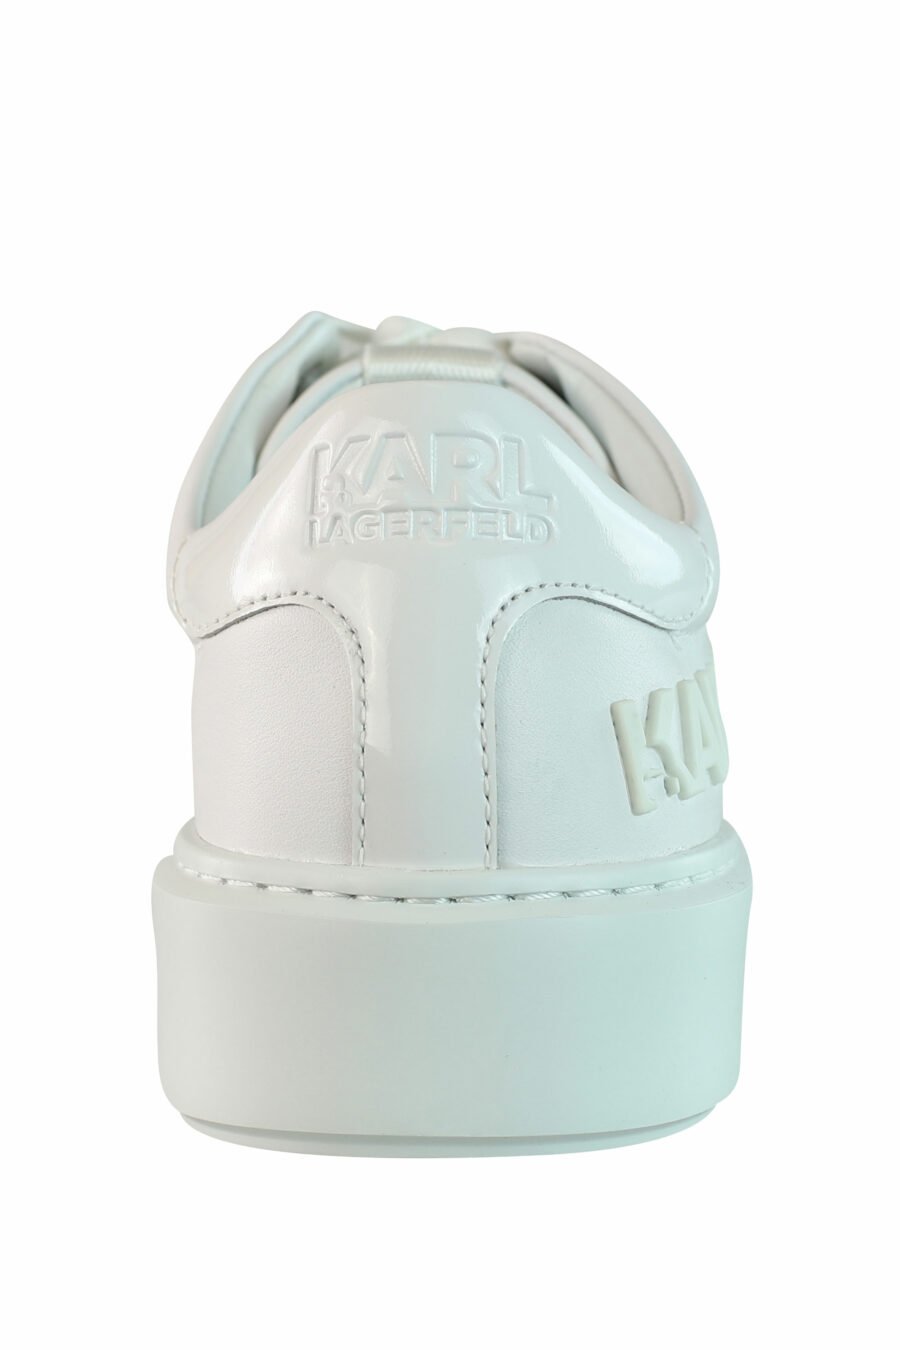 Zapatillas blancas "max kup" con logo blanco - IMG 0966